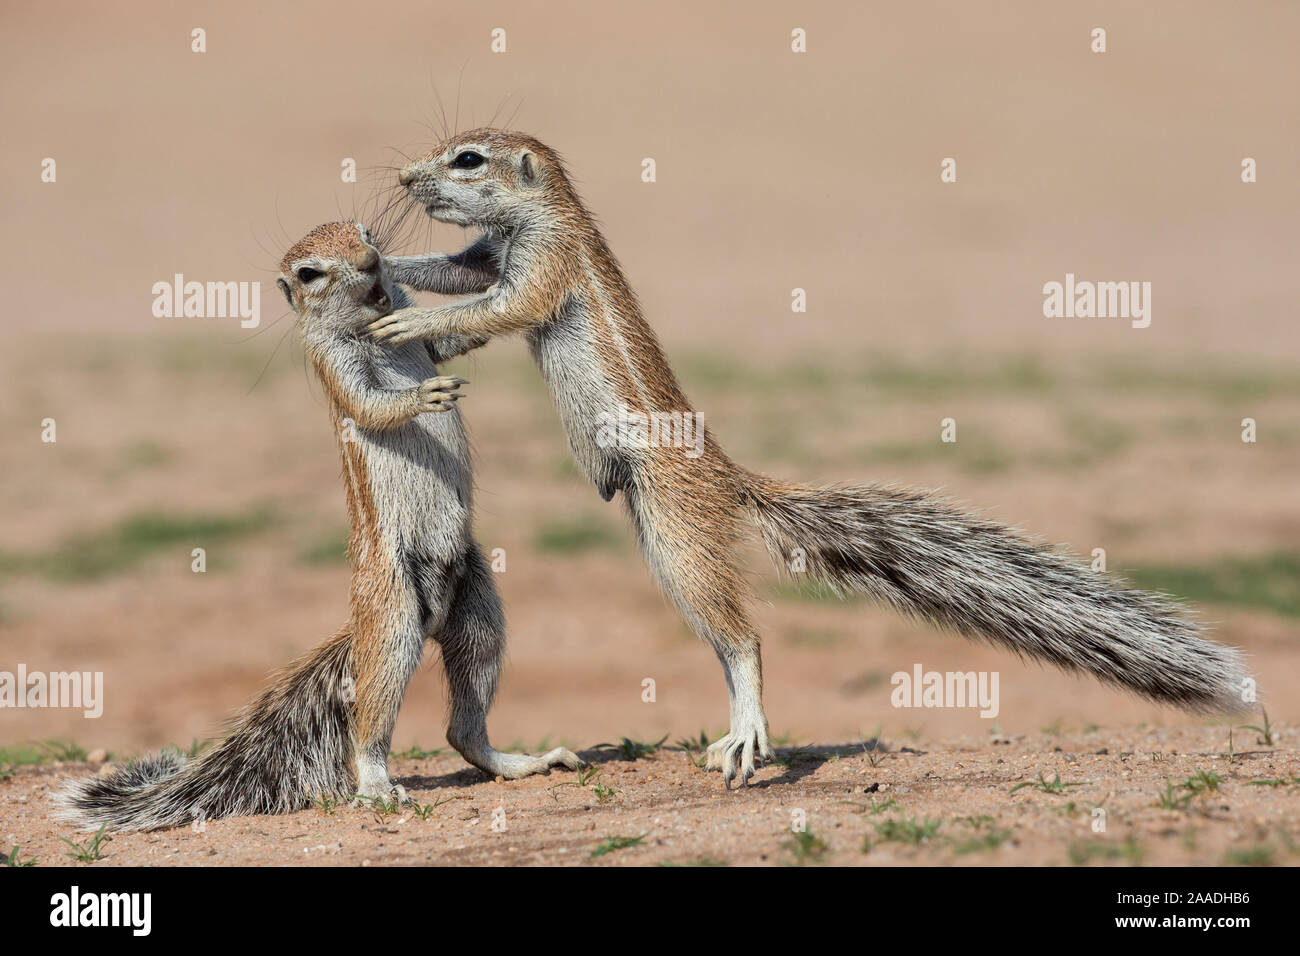 Les jeunes écureuils terrestres (Ha83 inauris) combats, Kgalagadi Transfrontier Park, Northern Cape, Afrique du Sud, janvier. Banque D'Images